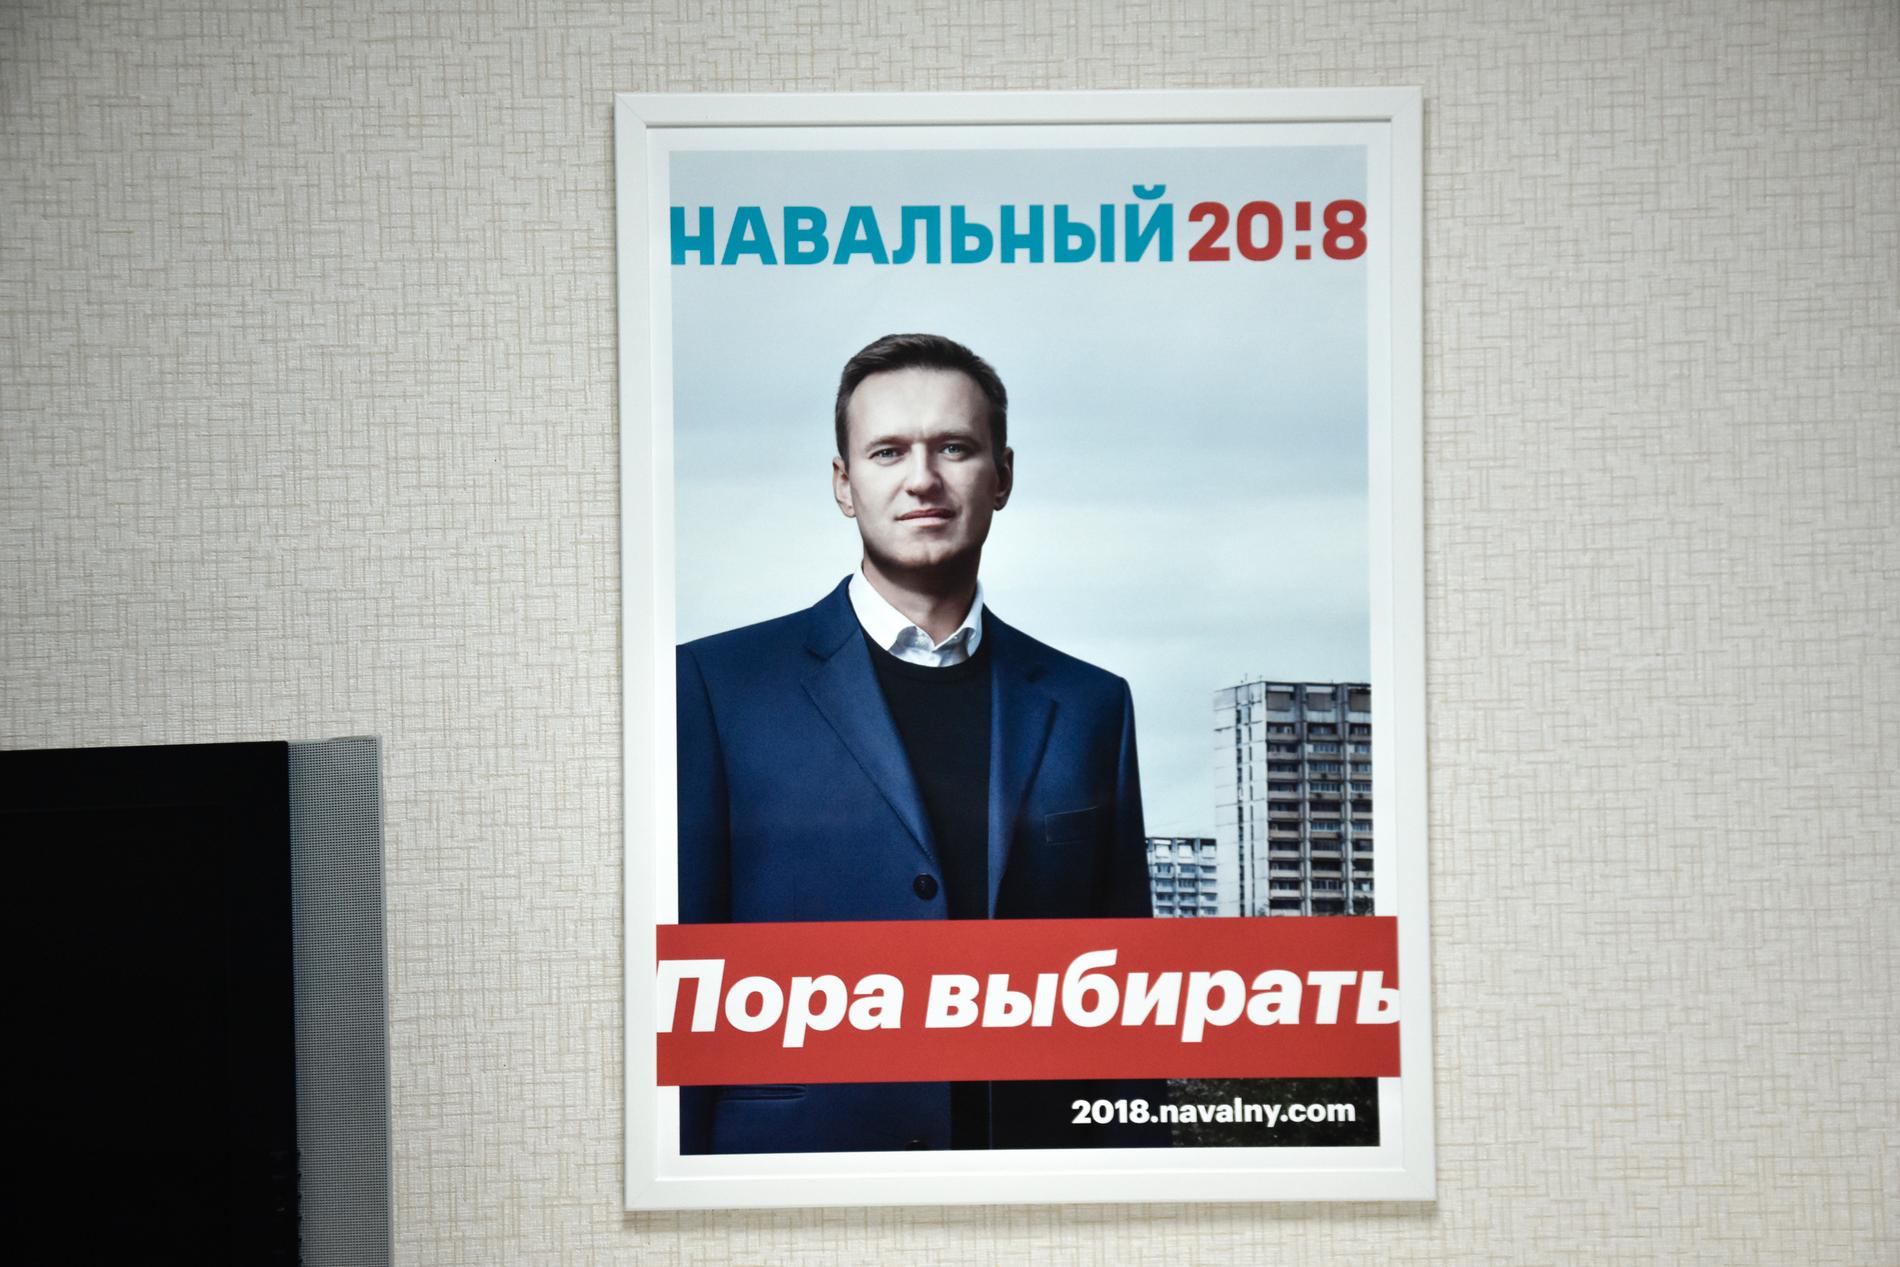 Antikorruptionsaktivisten Aleksej Navalnyj får inte ställa upp i årets presidentval. Hans färdiga valaffischer pryder ändå väggarna inne på hans lokala kampanjhögkvarter i Nizjnij Novgorod.